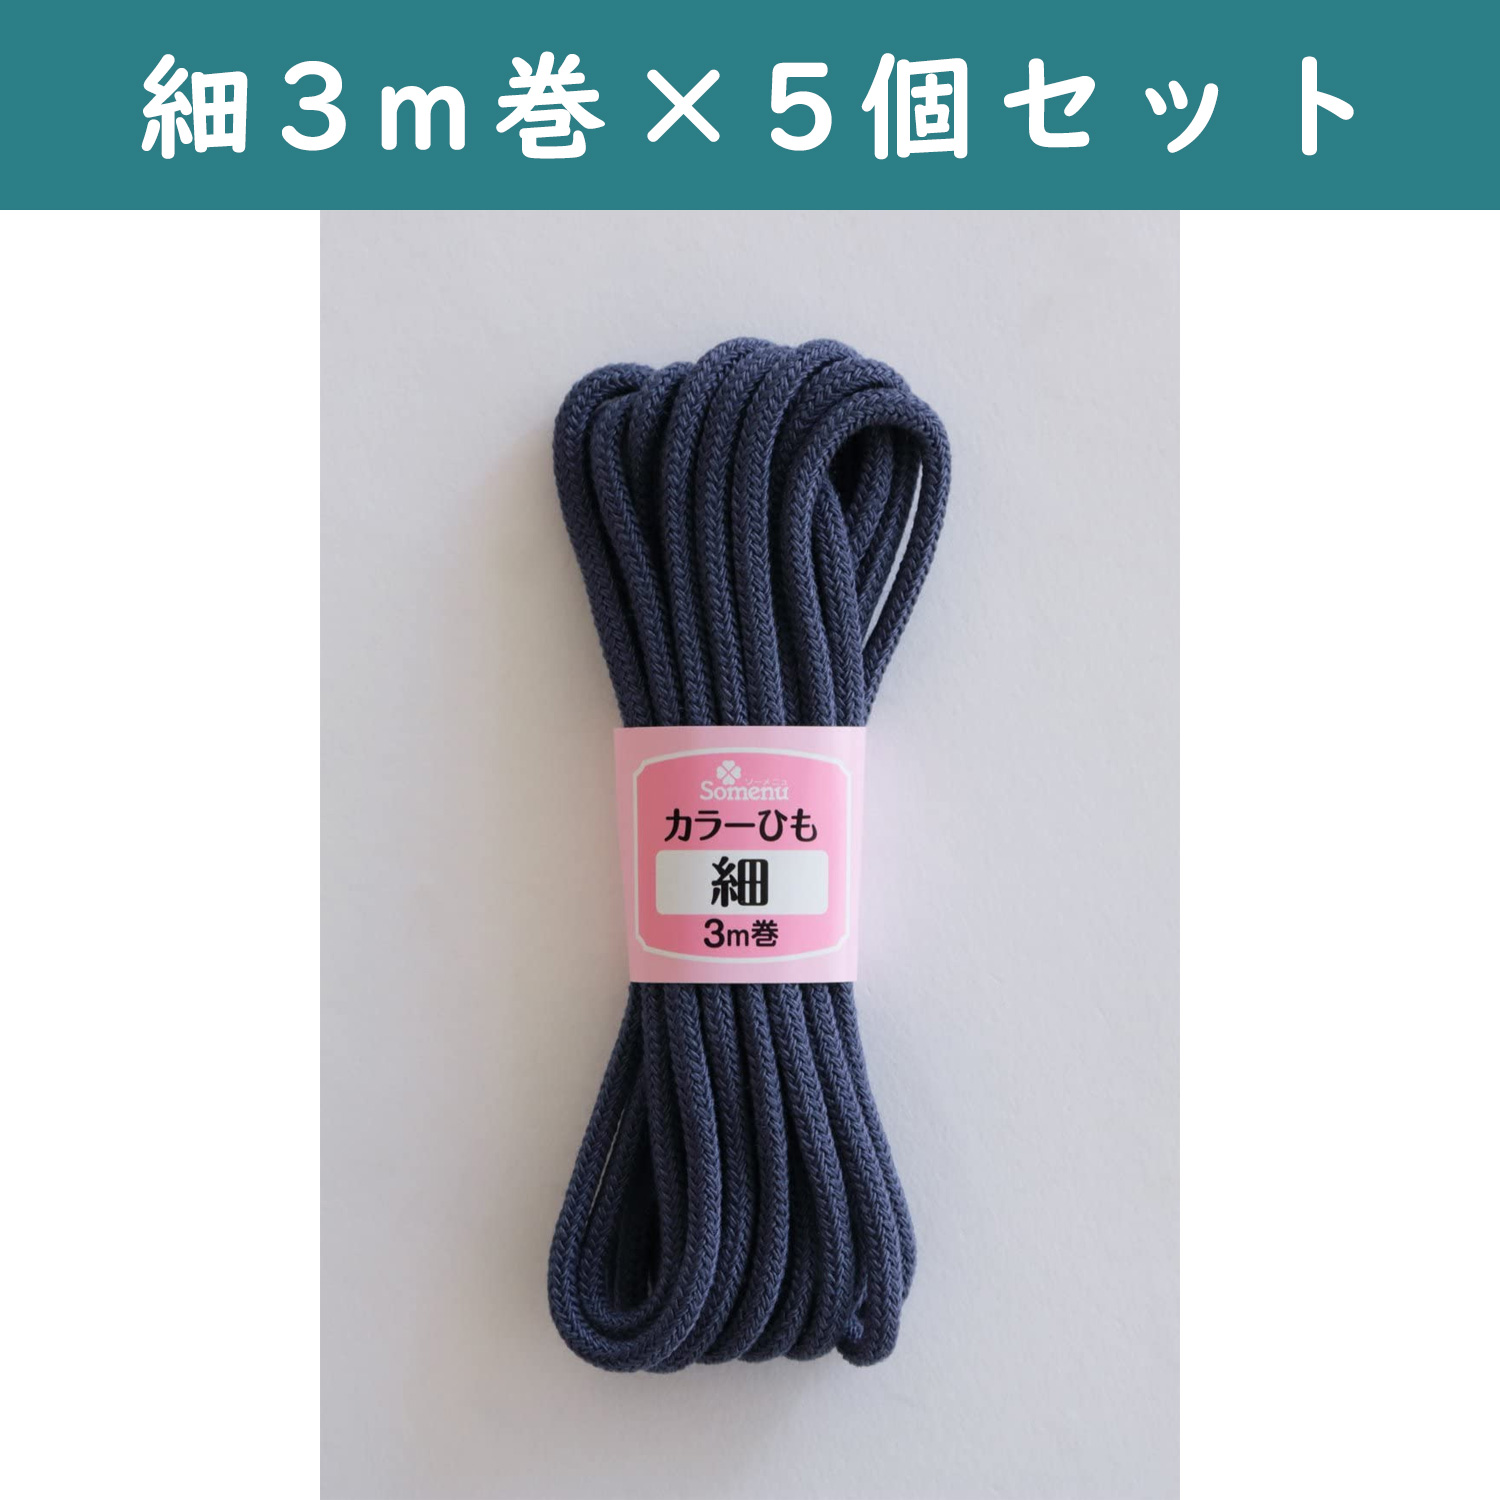 ■【5個】CL26-140-5set カラーひも 細 3m巻 紺 5個セット (セット)